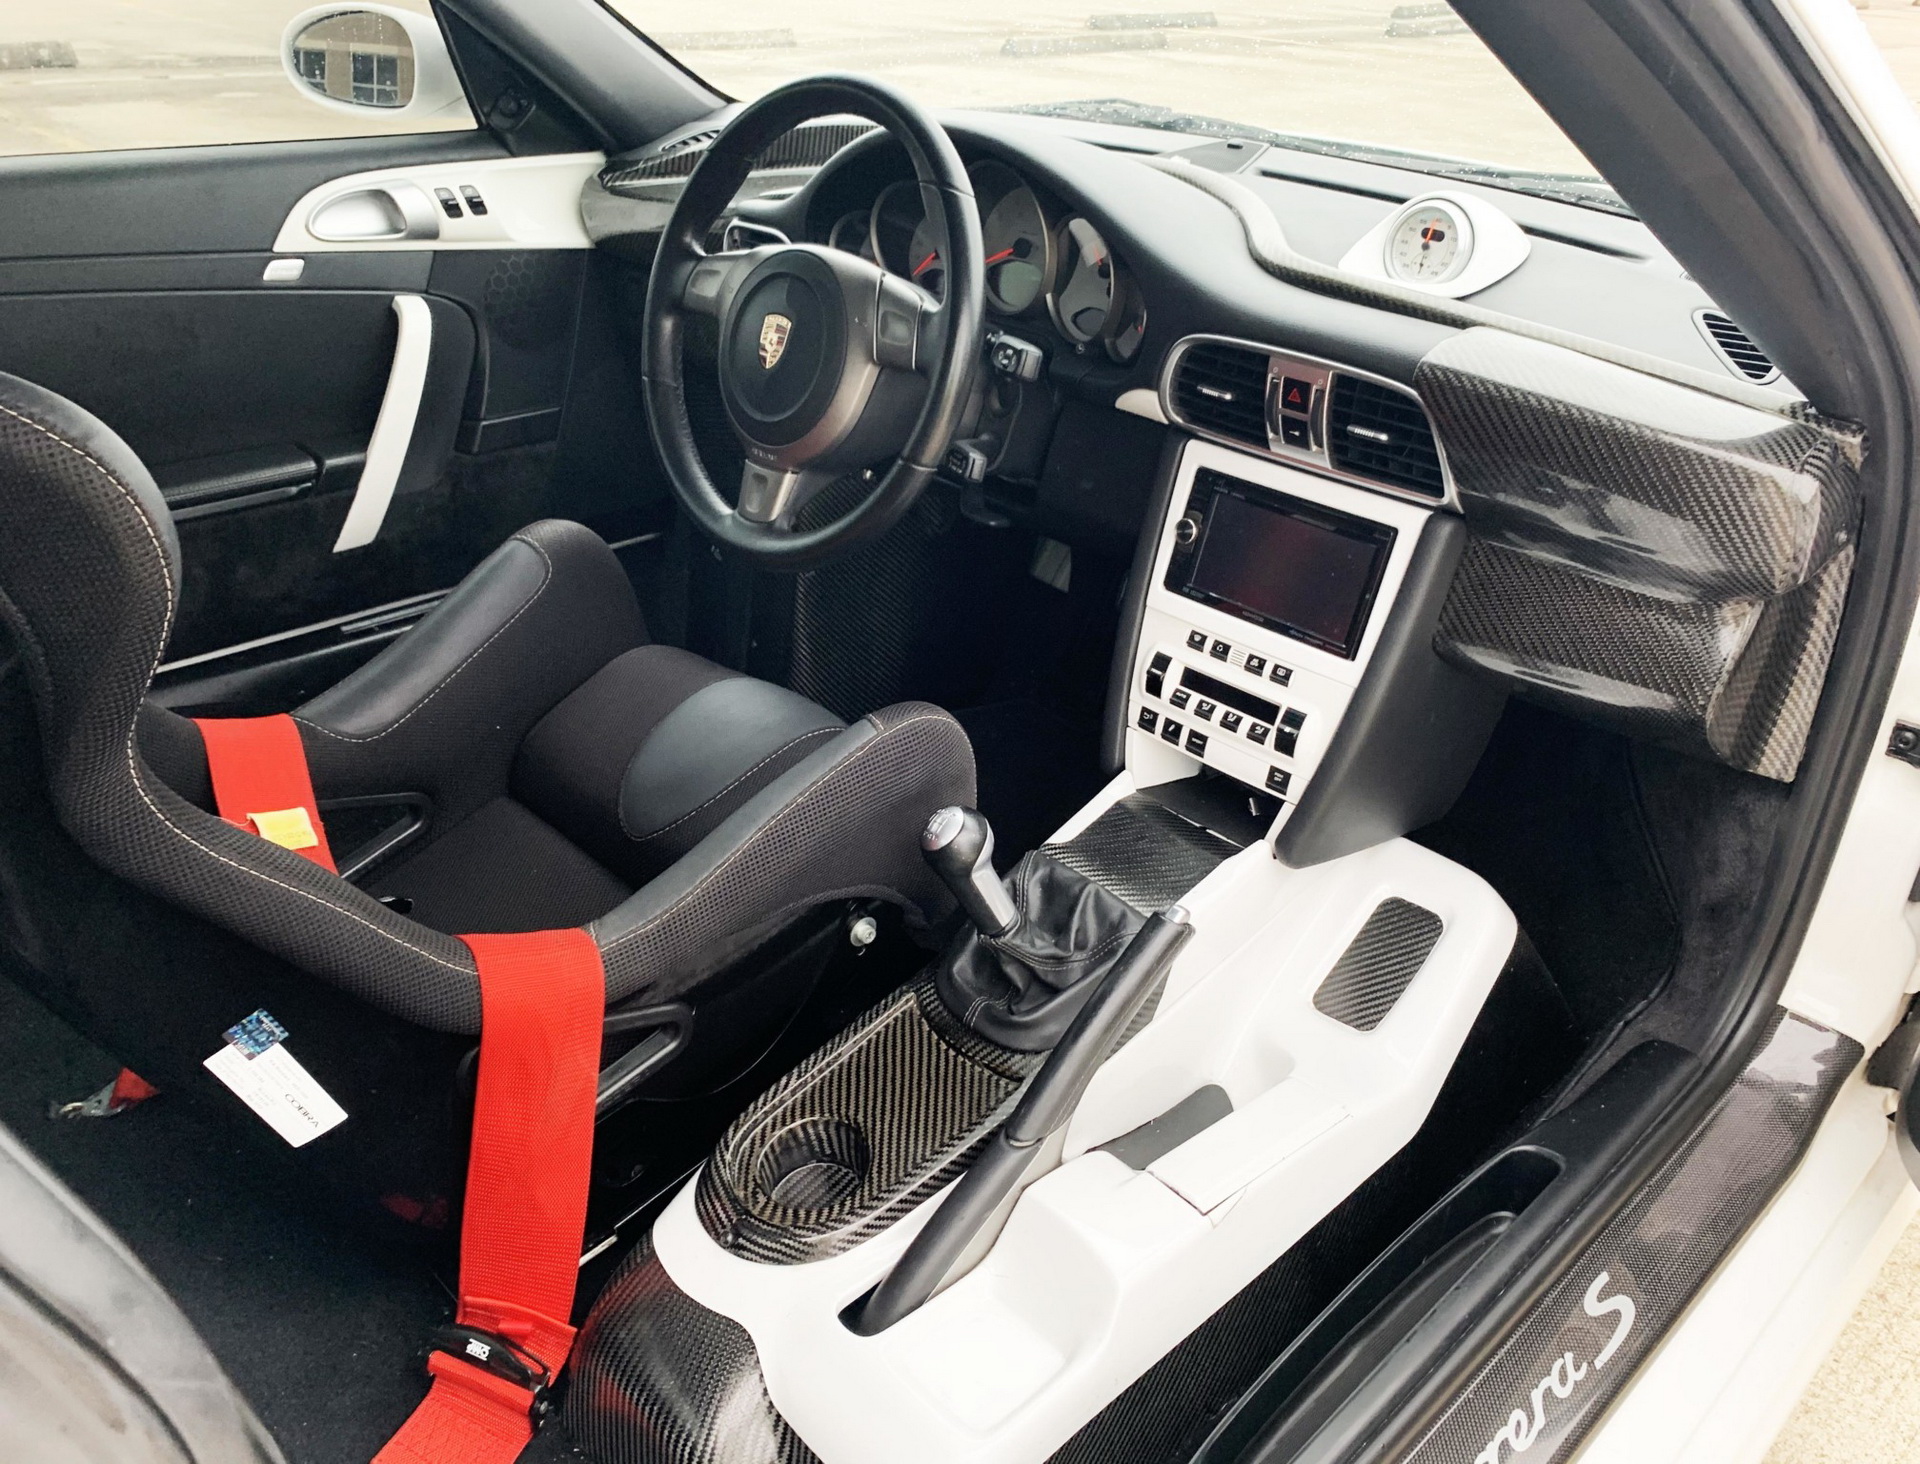 Porsche 911 Centro, czyli poczuć się jak w McLarenie F1